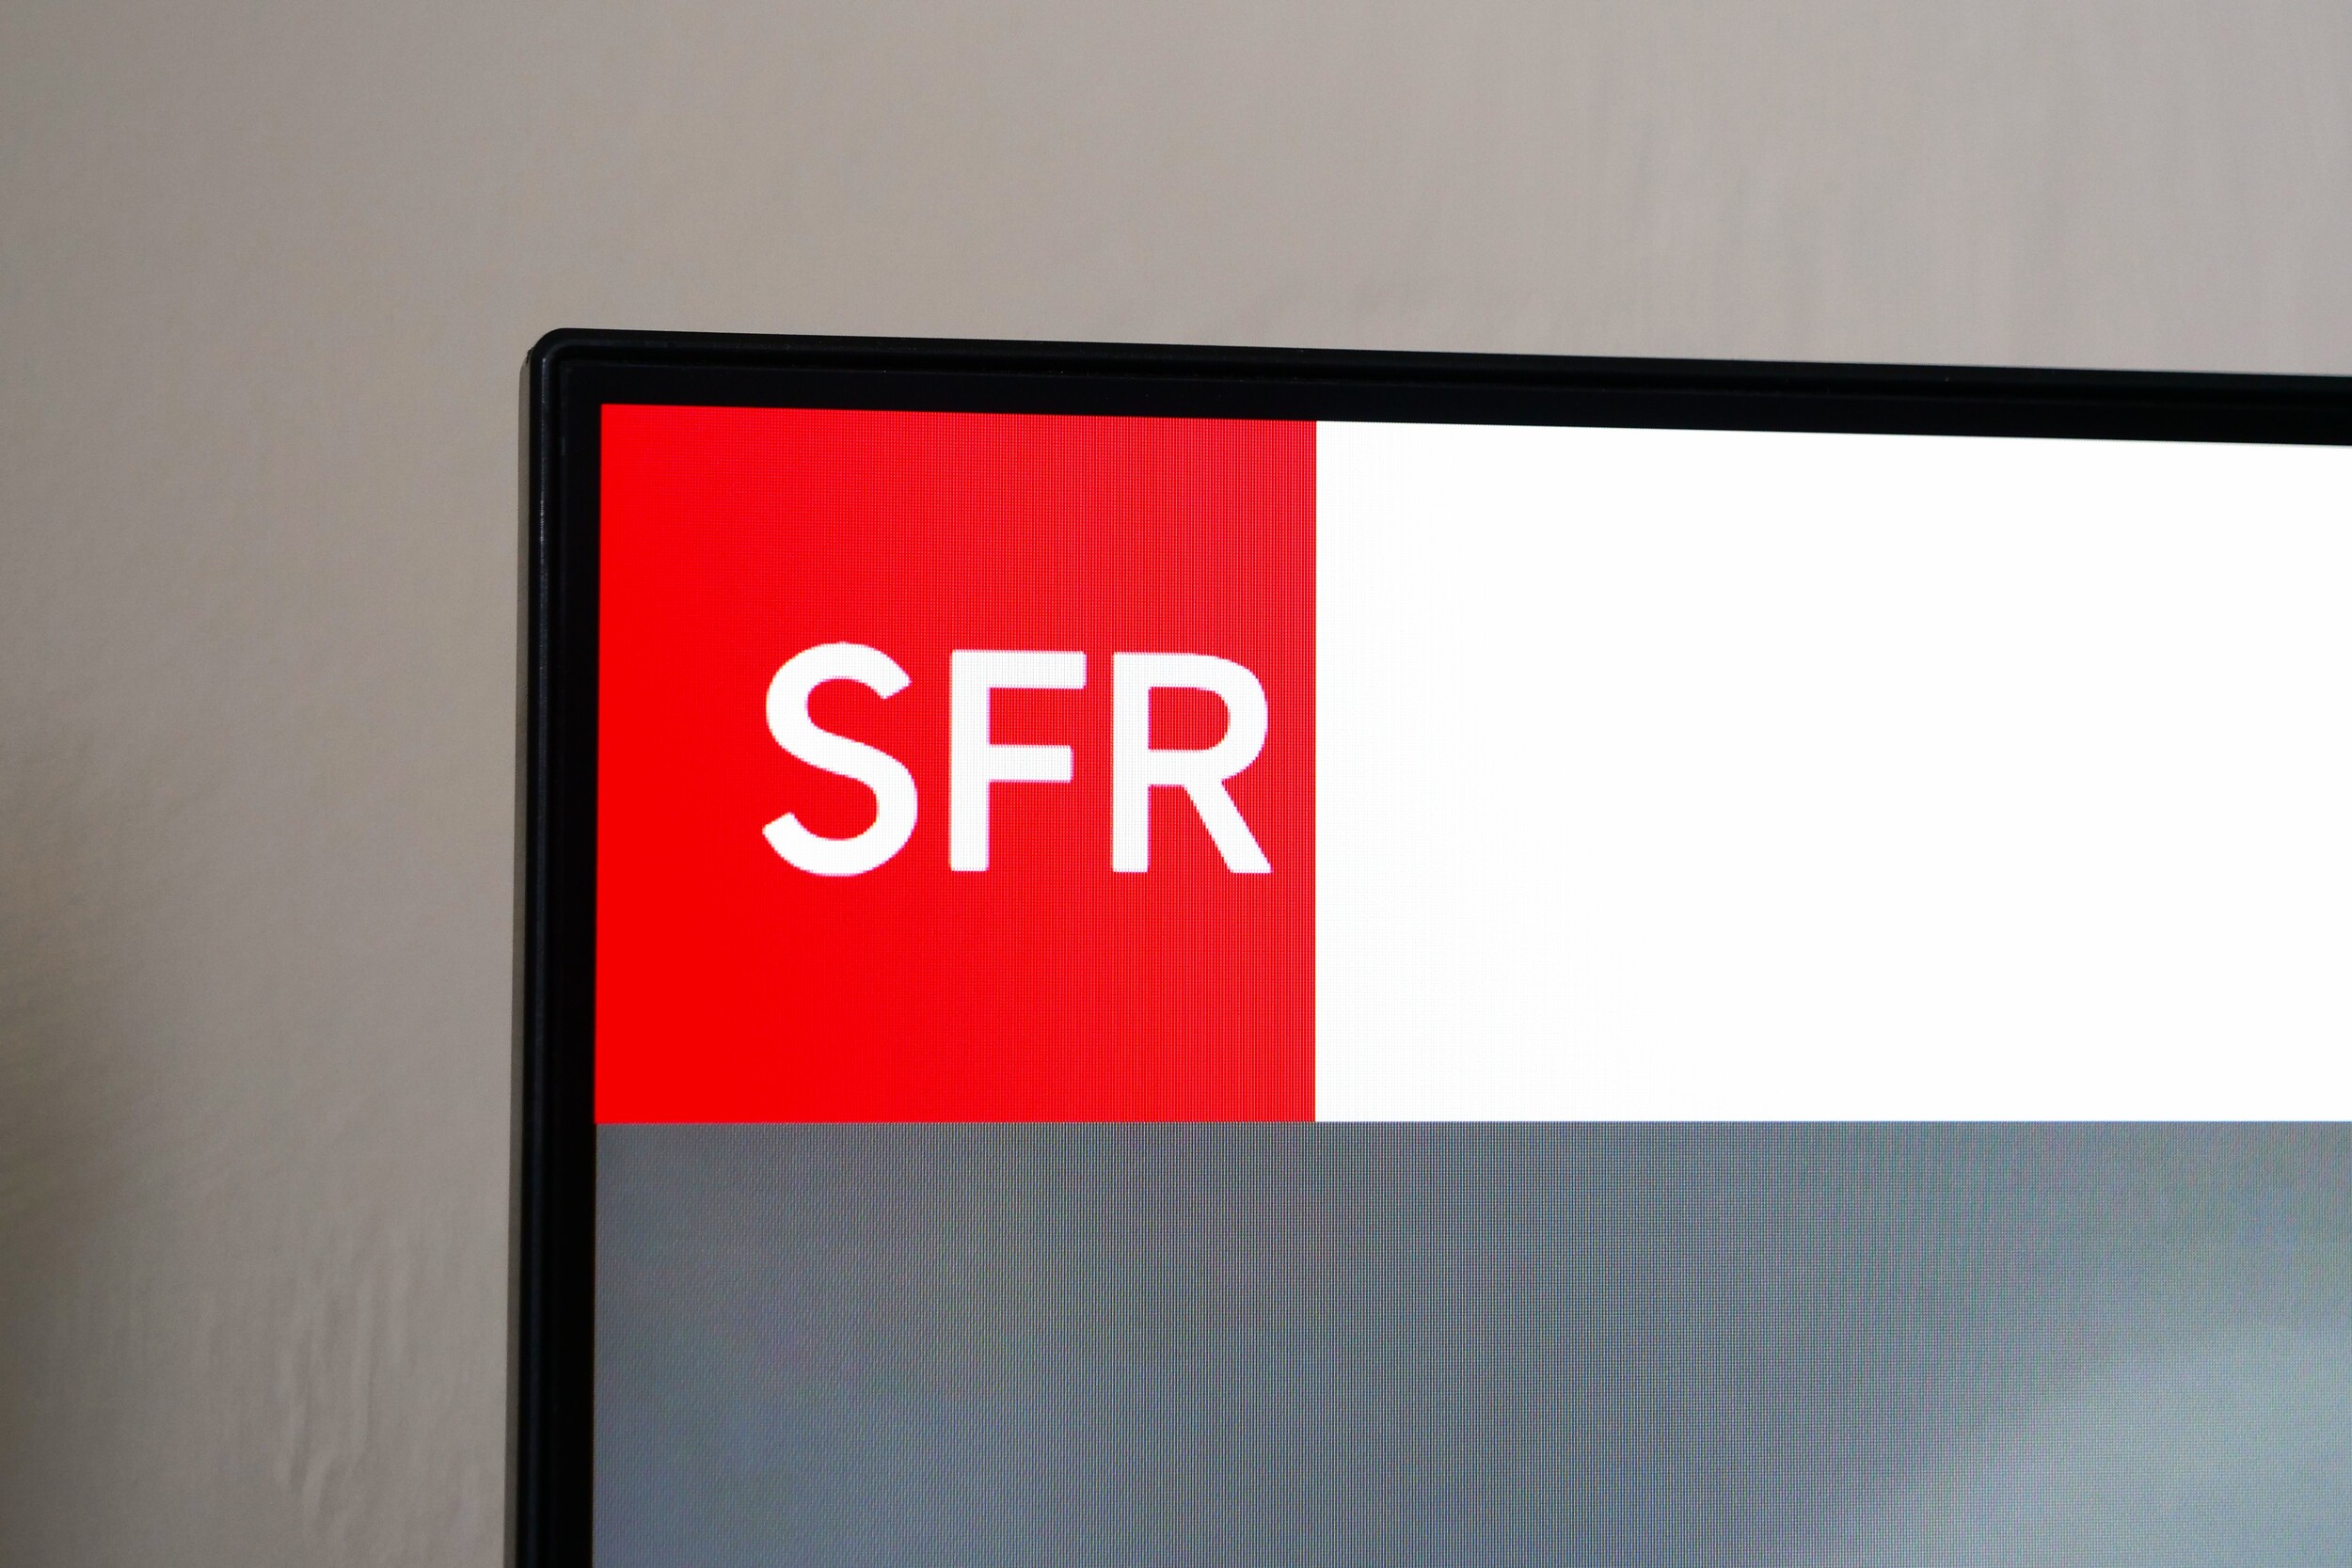 SFR va devoir donner 10 millions d'euros à Orange pour des impayés d'électricité et de fibre optique